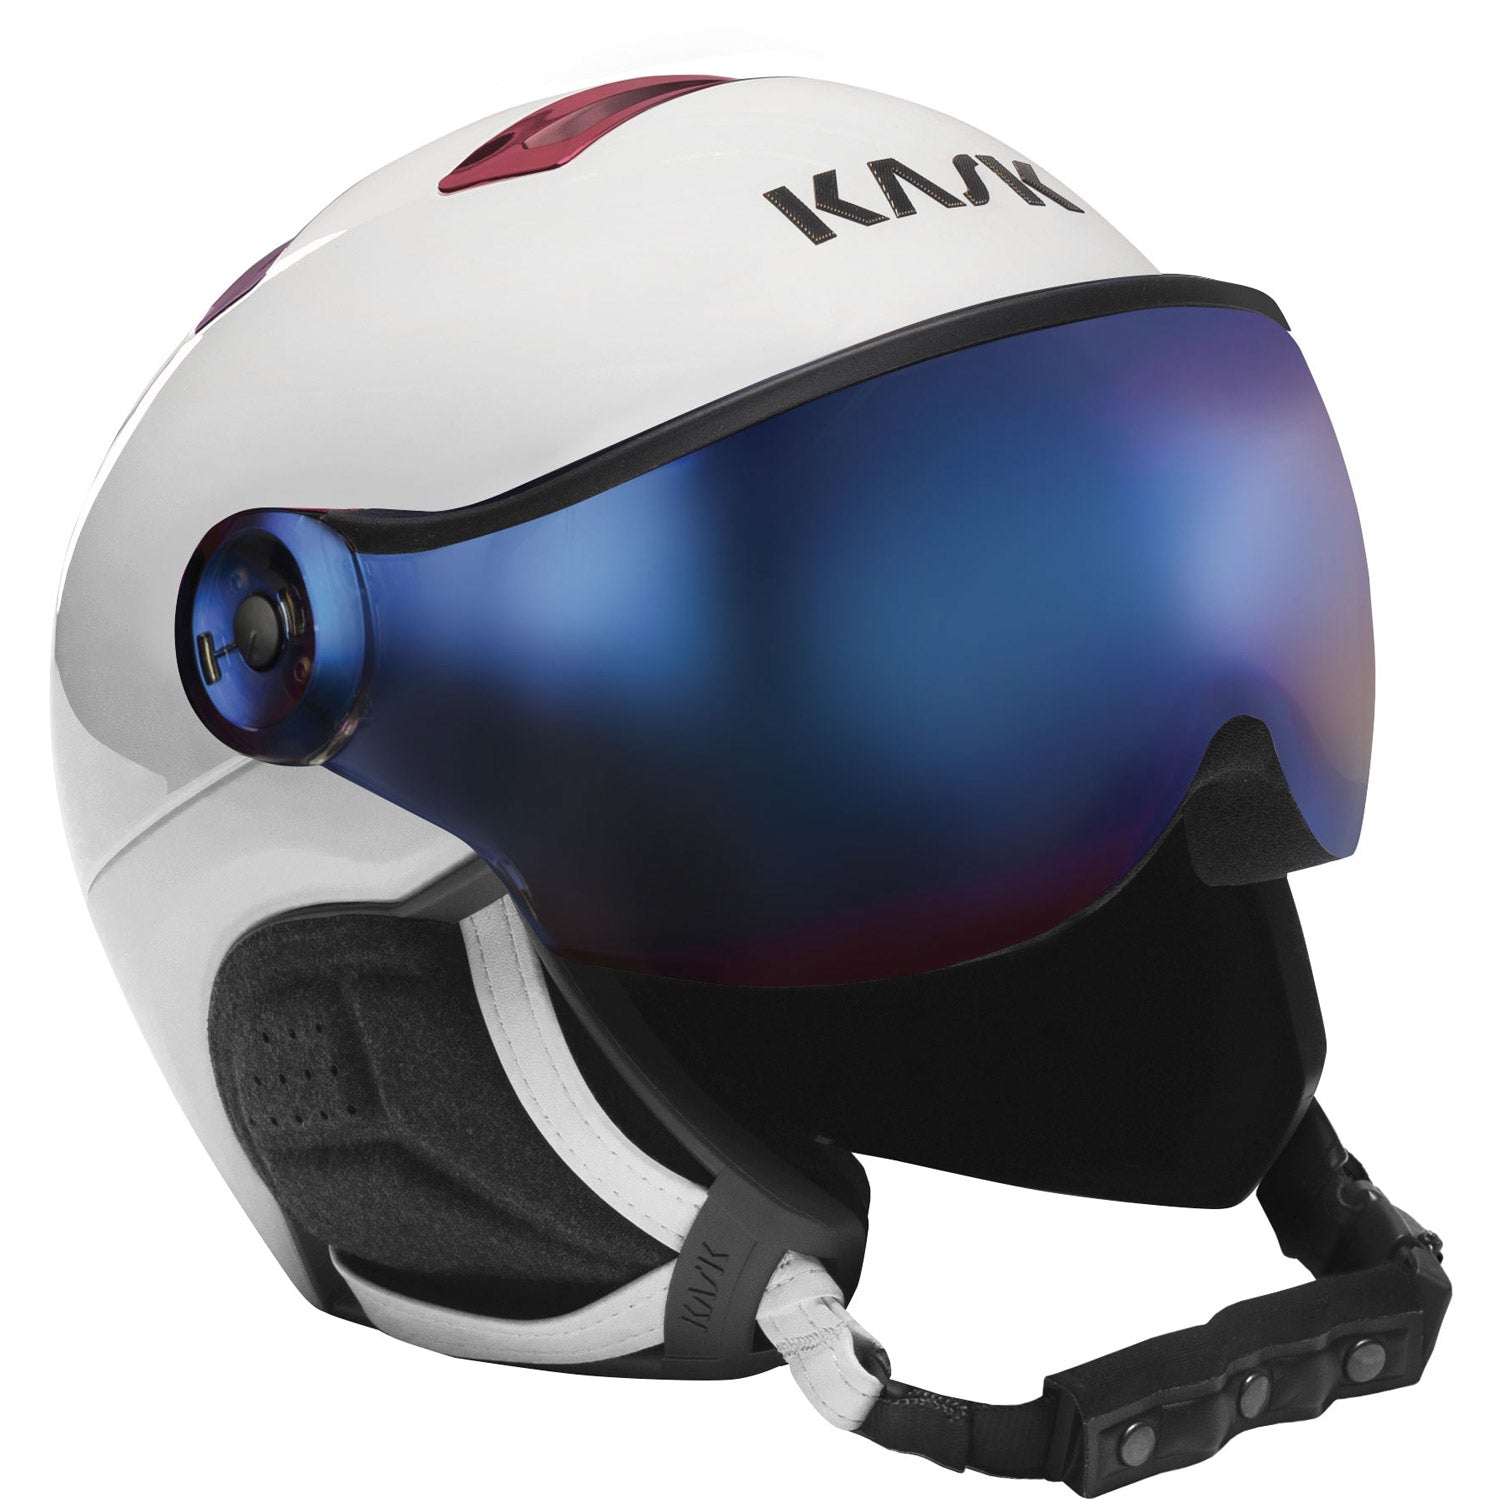 Chrome Visor Snow Helmet